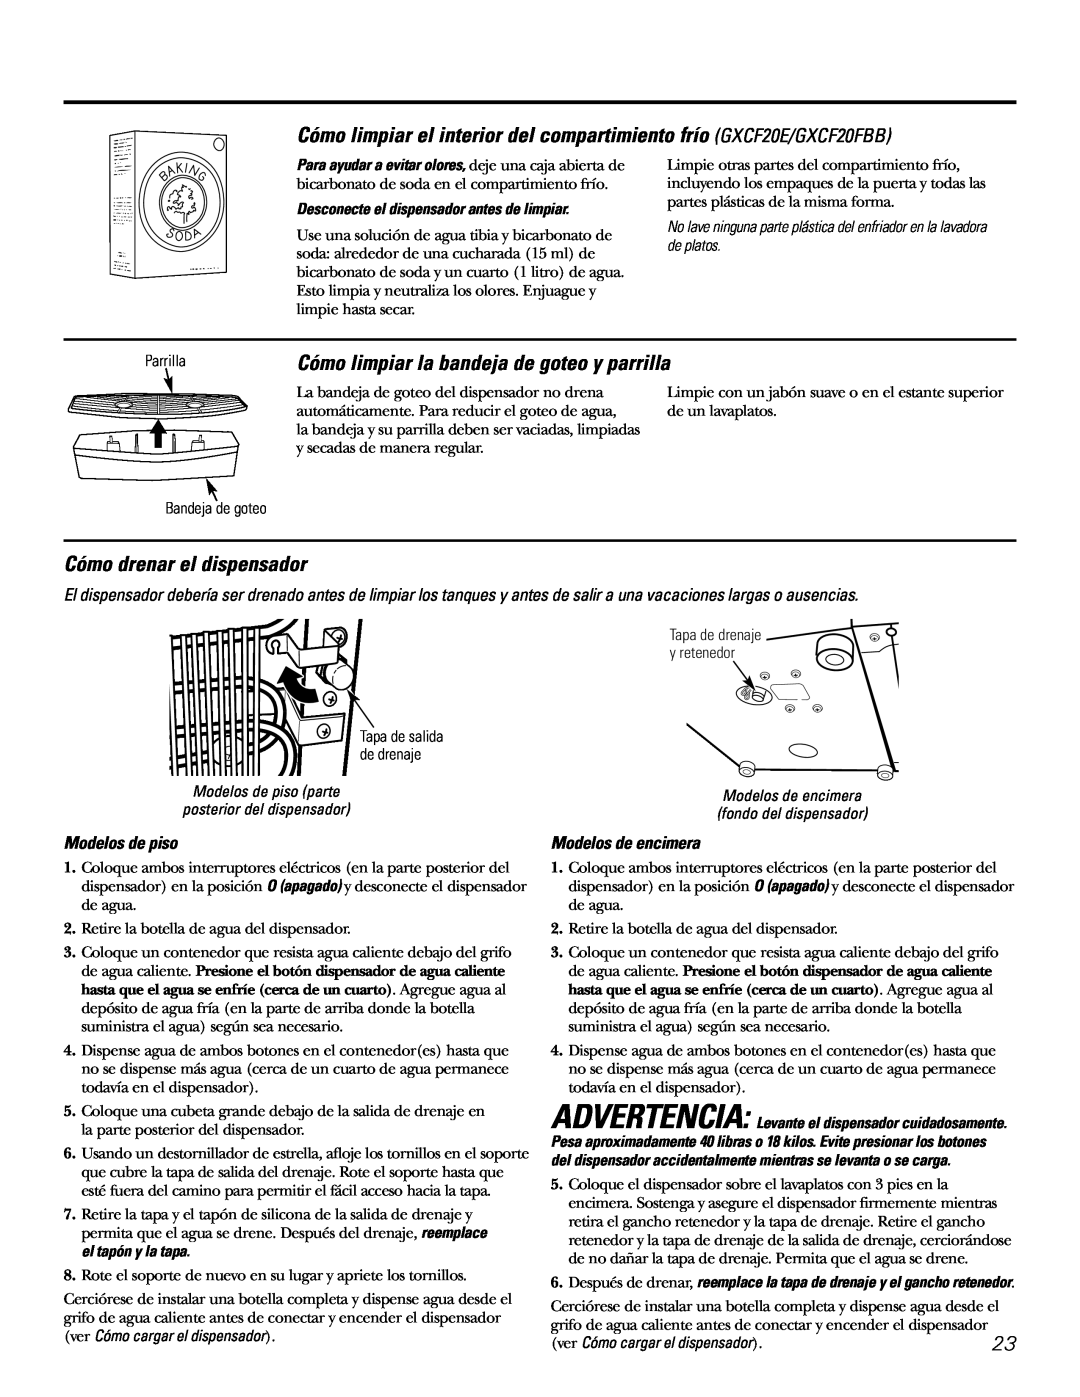 GE owner manual Cómo limpiar el interior del compartimiento frío GXCF20E/GXCF20FBB, Cómo drenar el dispensador 